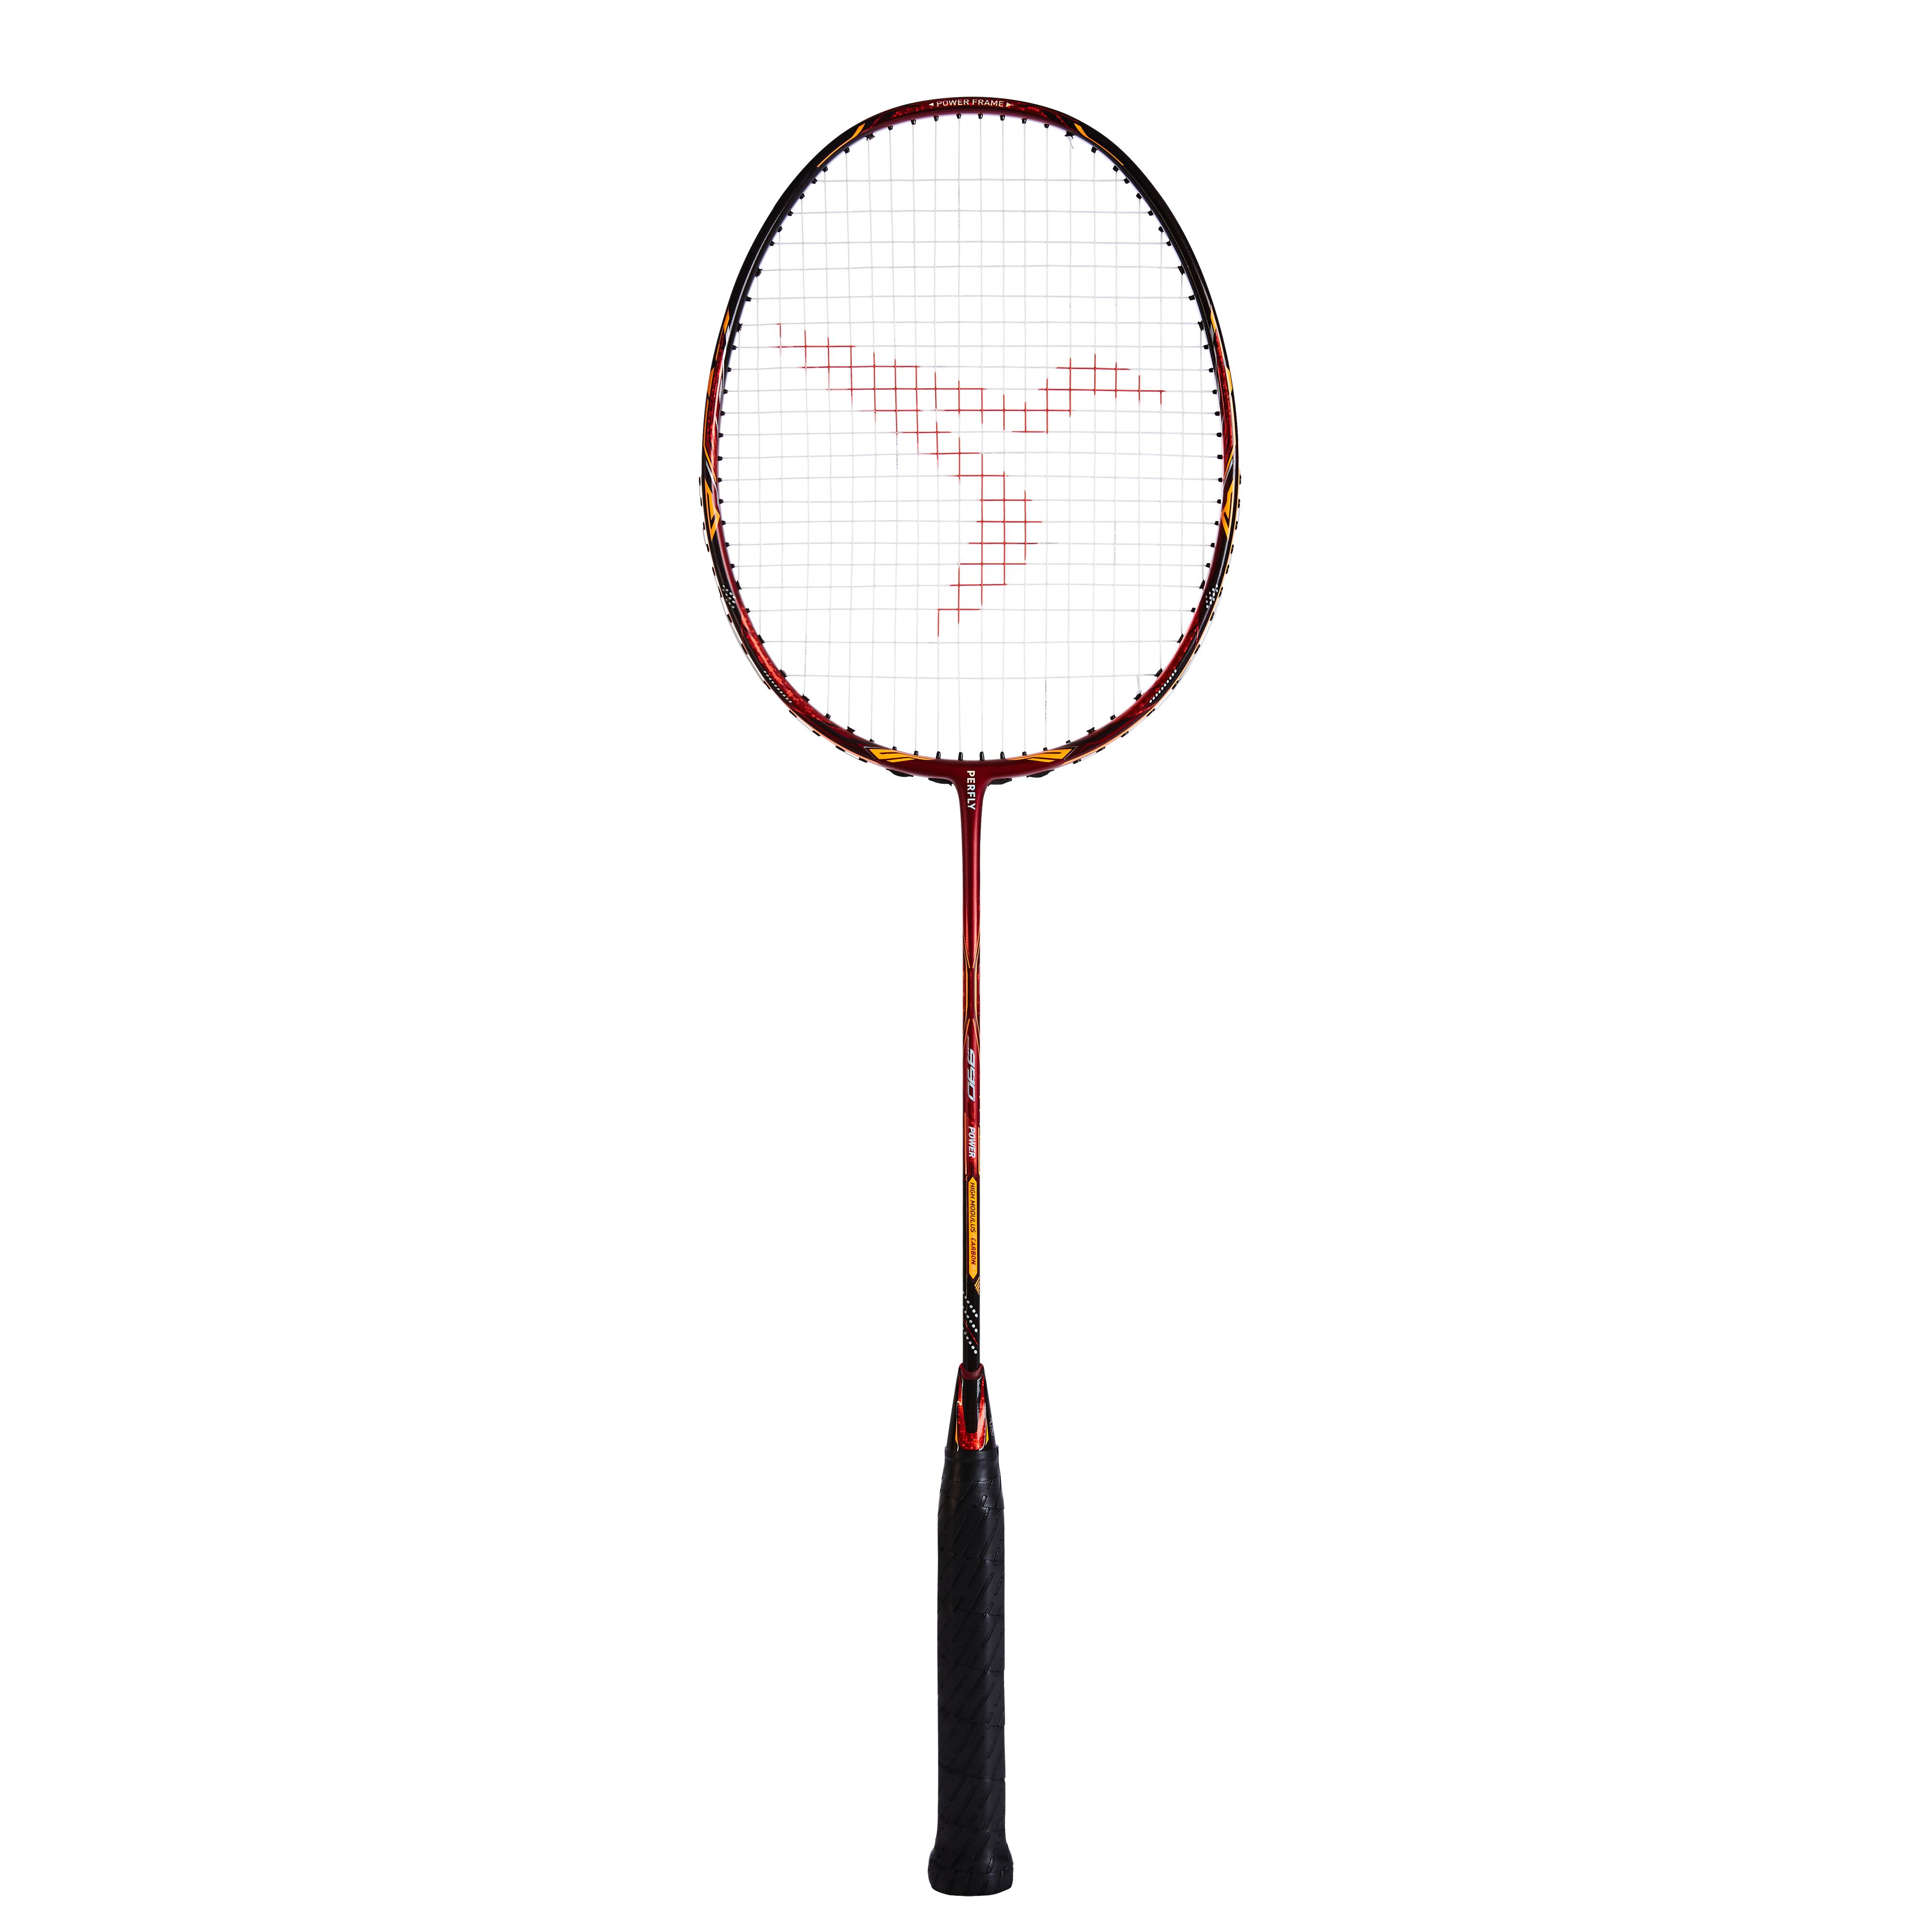 Leggere Resistenti Mountain Warehouse Set di Racchette da Badminton Facili da Usare Ideali per Le attività Sportive e all'aperto 